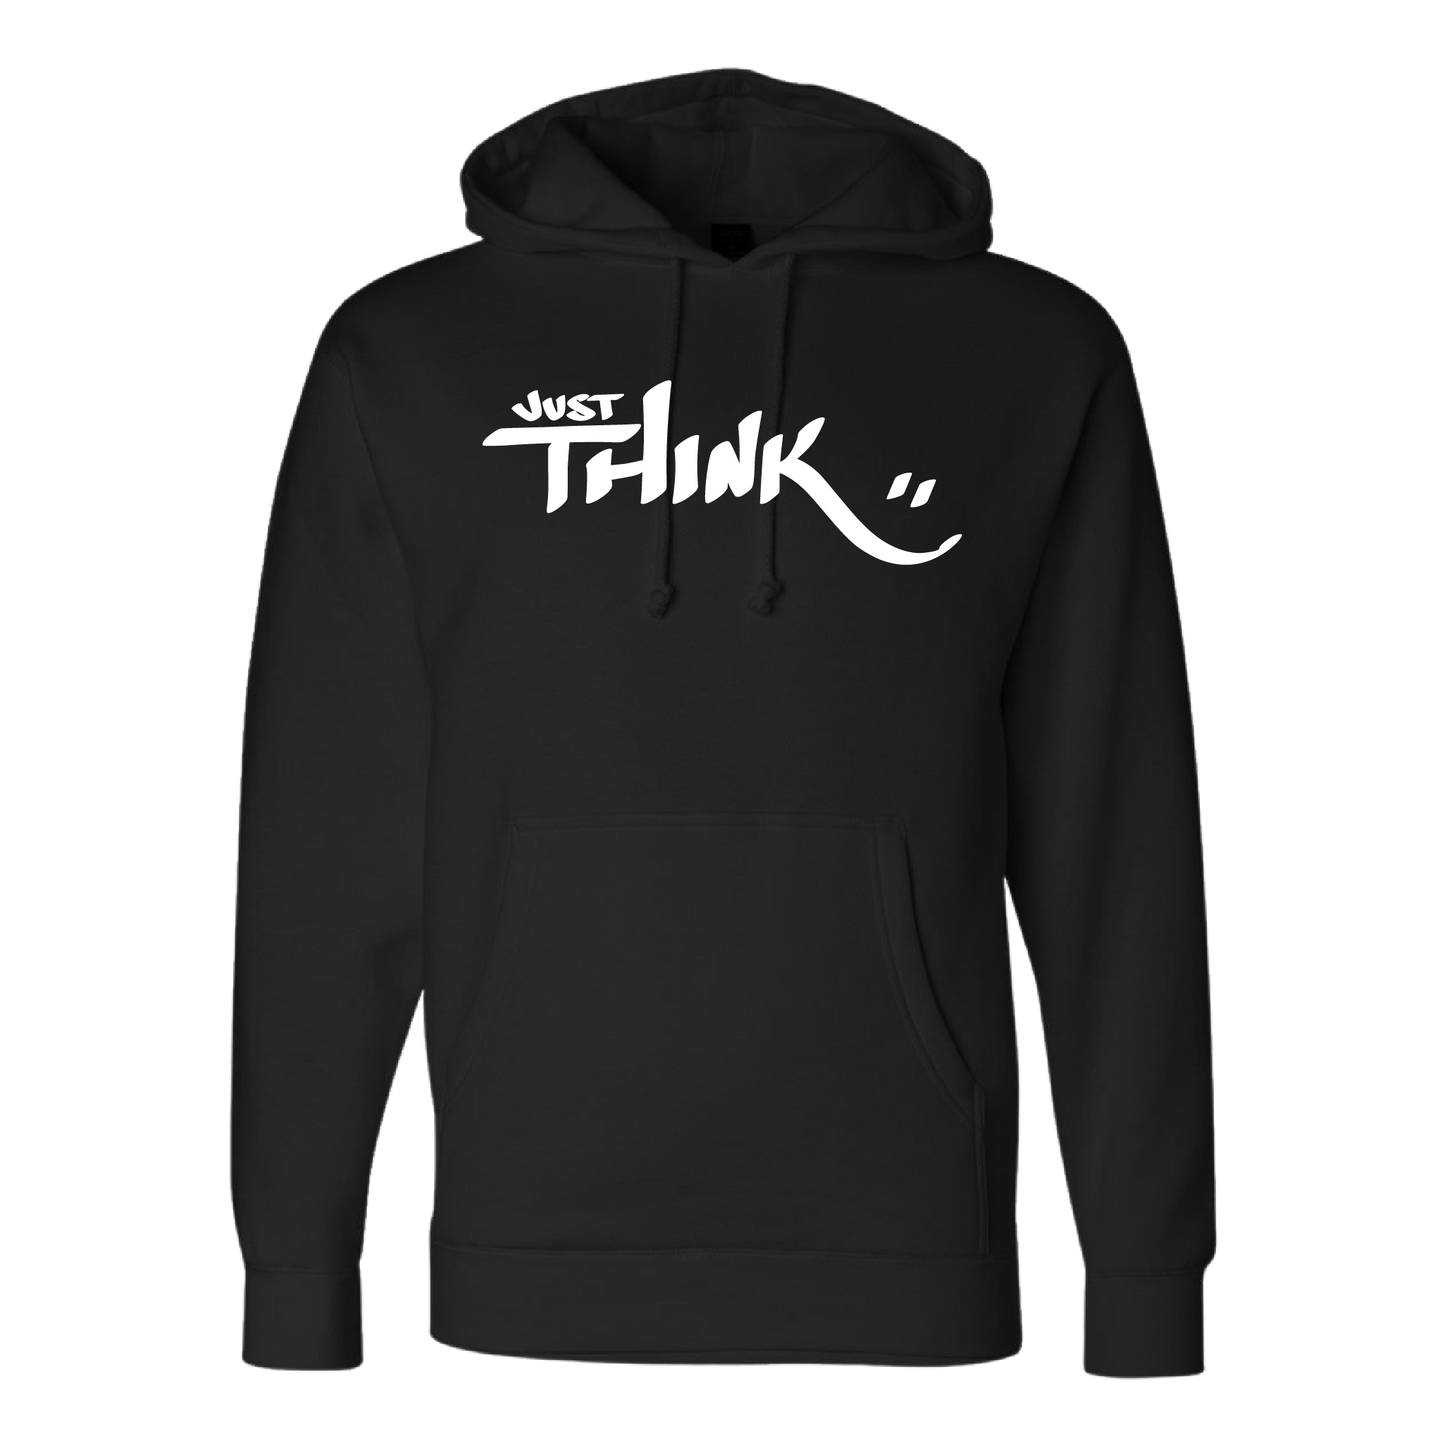 Just Think & Smile (Premium Hoodie)